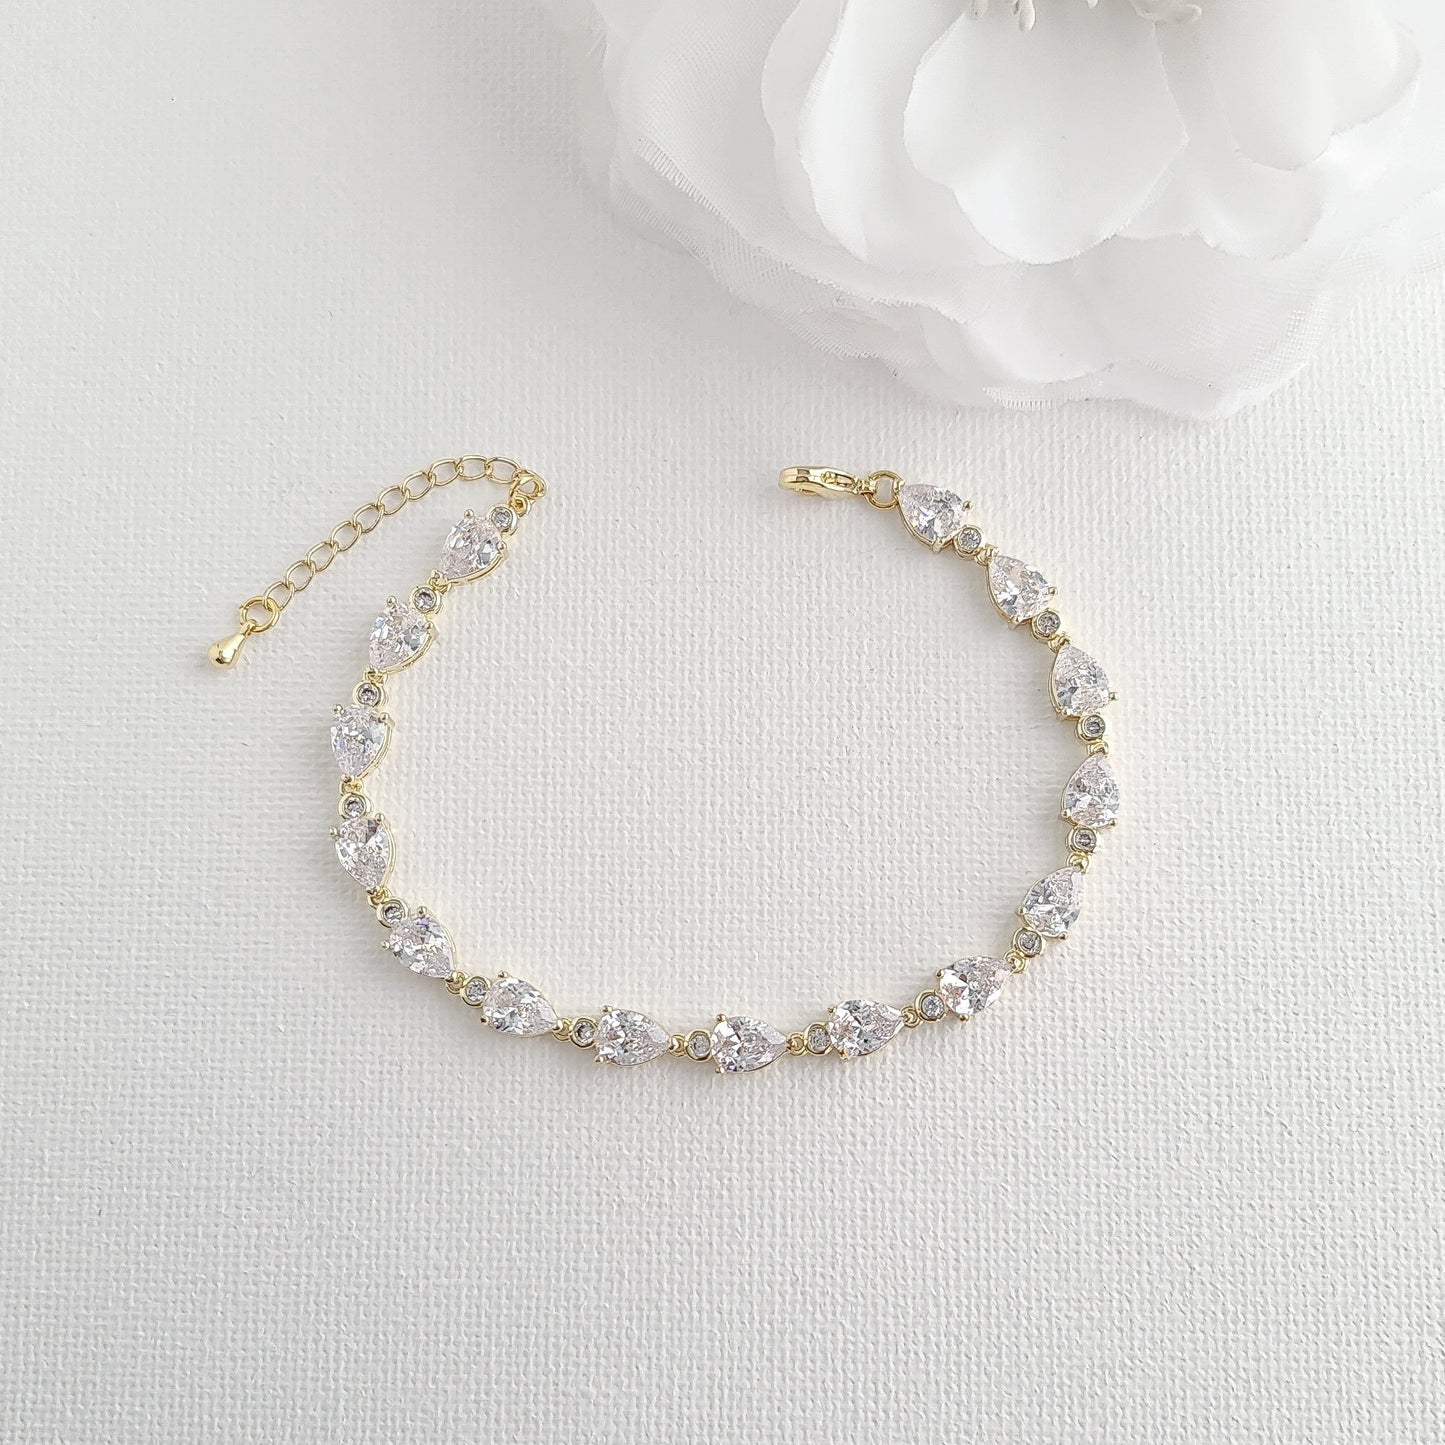 Dainty Teardrop Rose Gold Bracelet for The Bride-Ivy